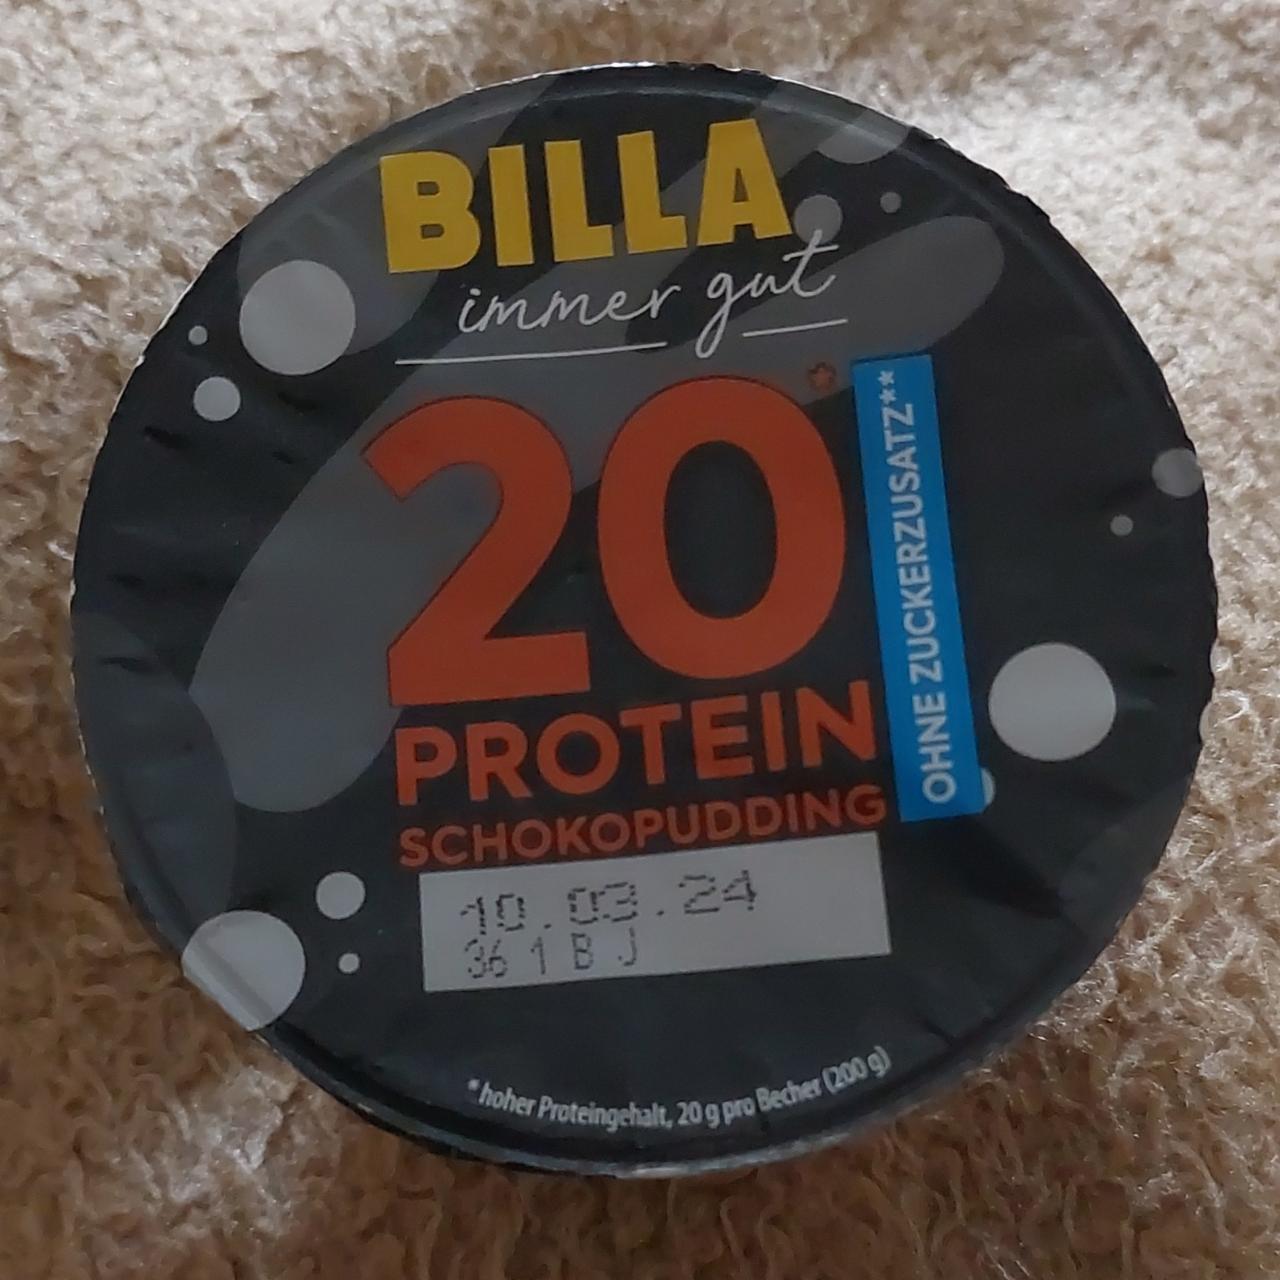 Fotografie - 20 Protein Schokopudding Billa